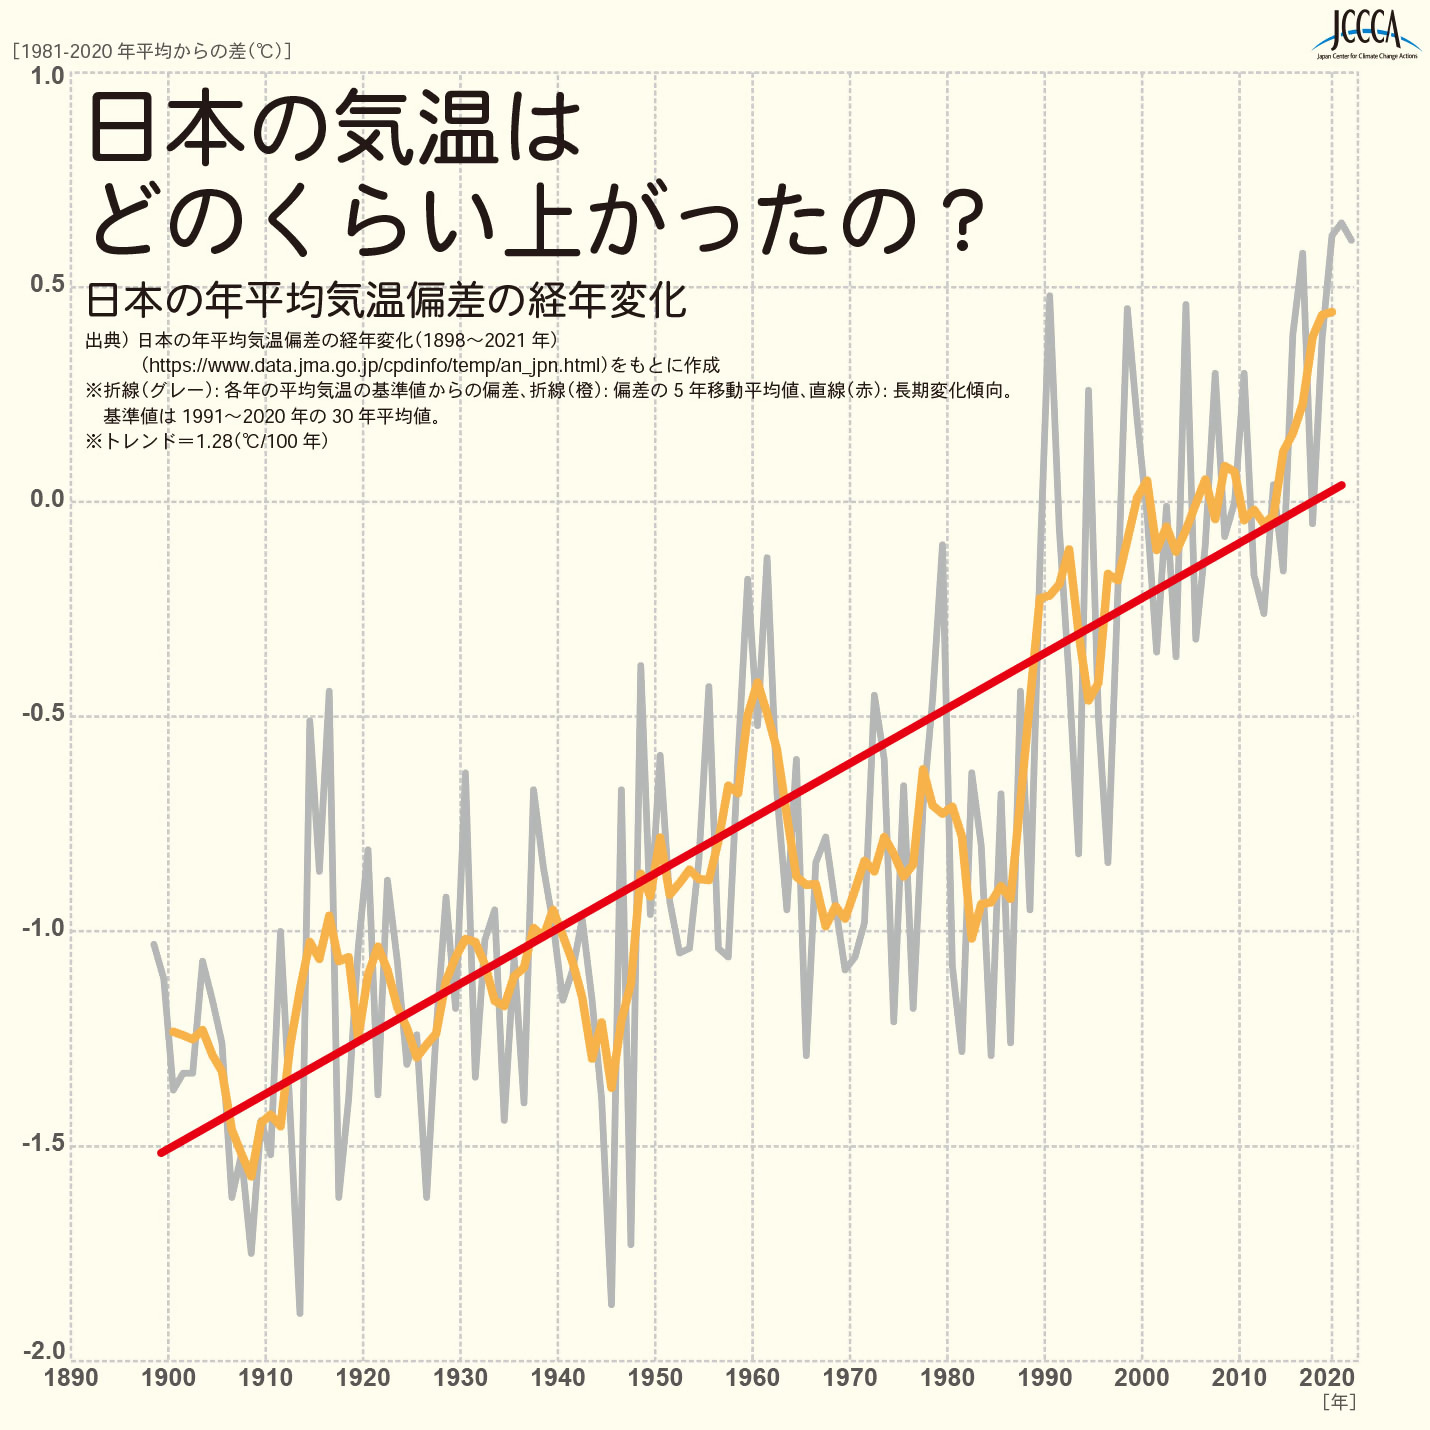 日本における年平均気温の経年変化の画像